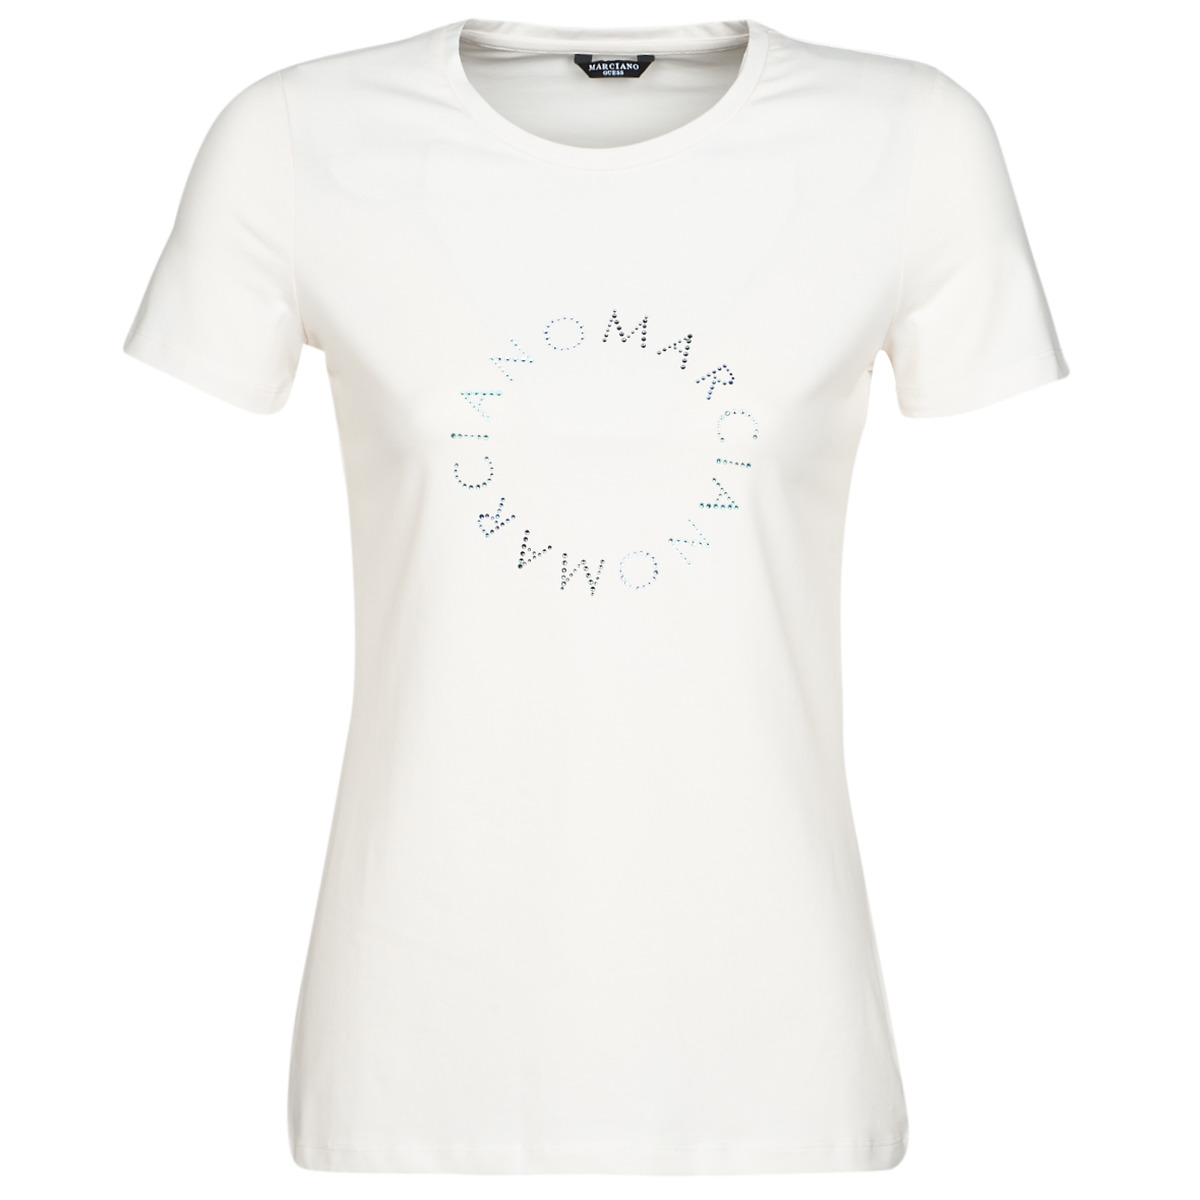 tekstylia Damskie T-shirty z krótkim rękawem Marciano ICED LOGO TEE Biały / Niebieski